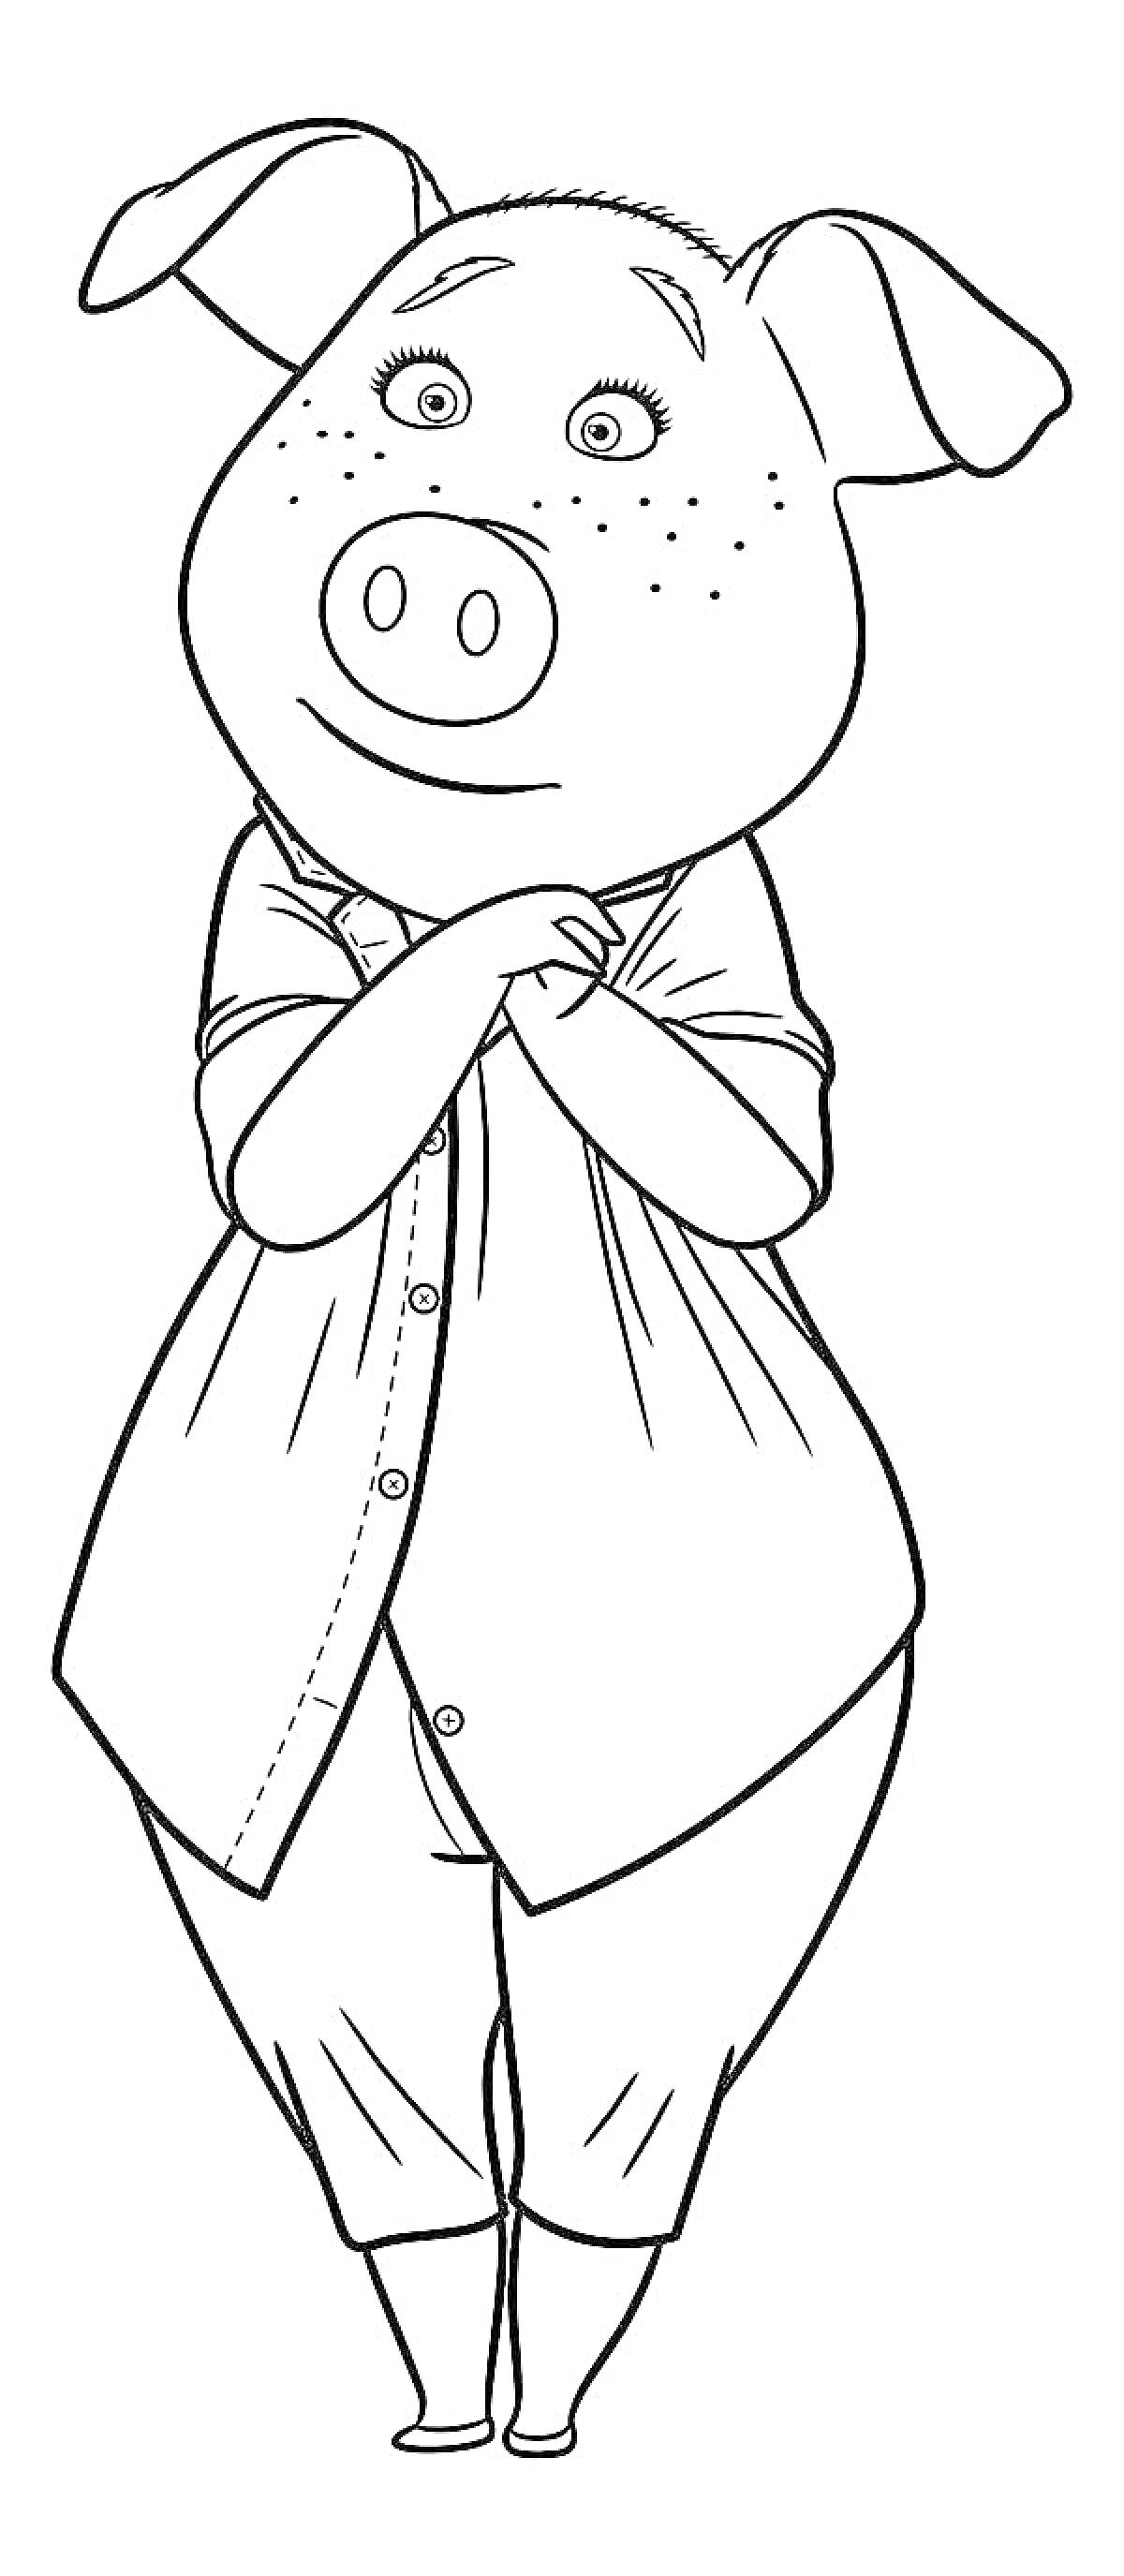 Раскраска Свинка в одежде из мультфильма 